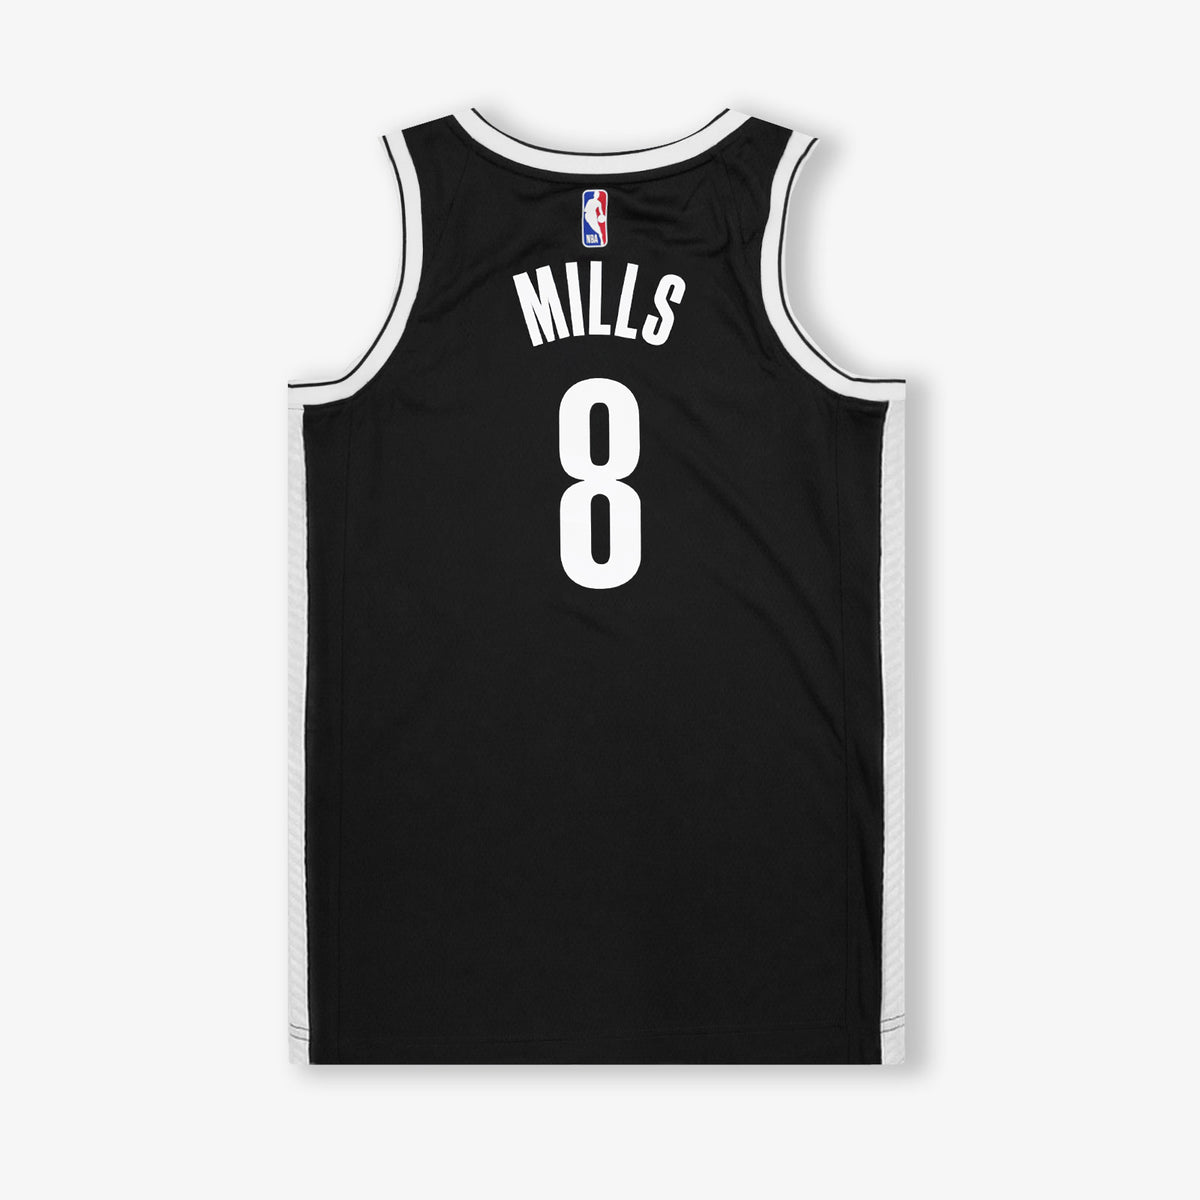 Brooklyn Nets Jerseys & Teamwear, NBA Merchandise